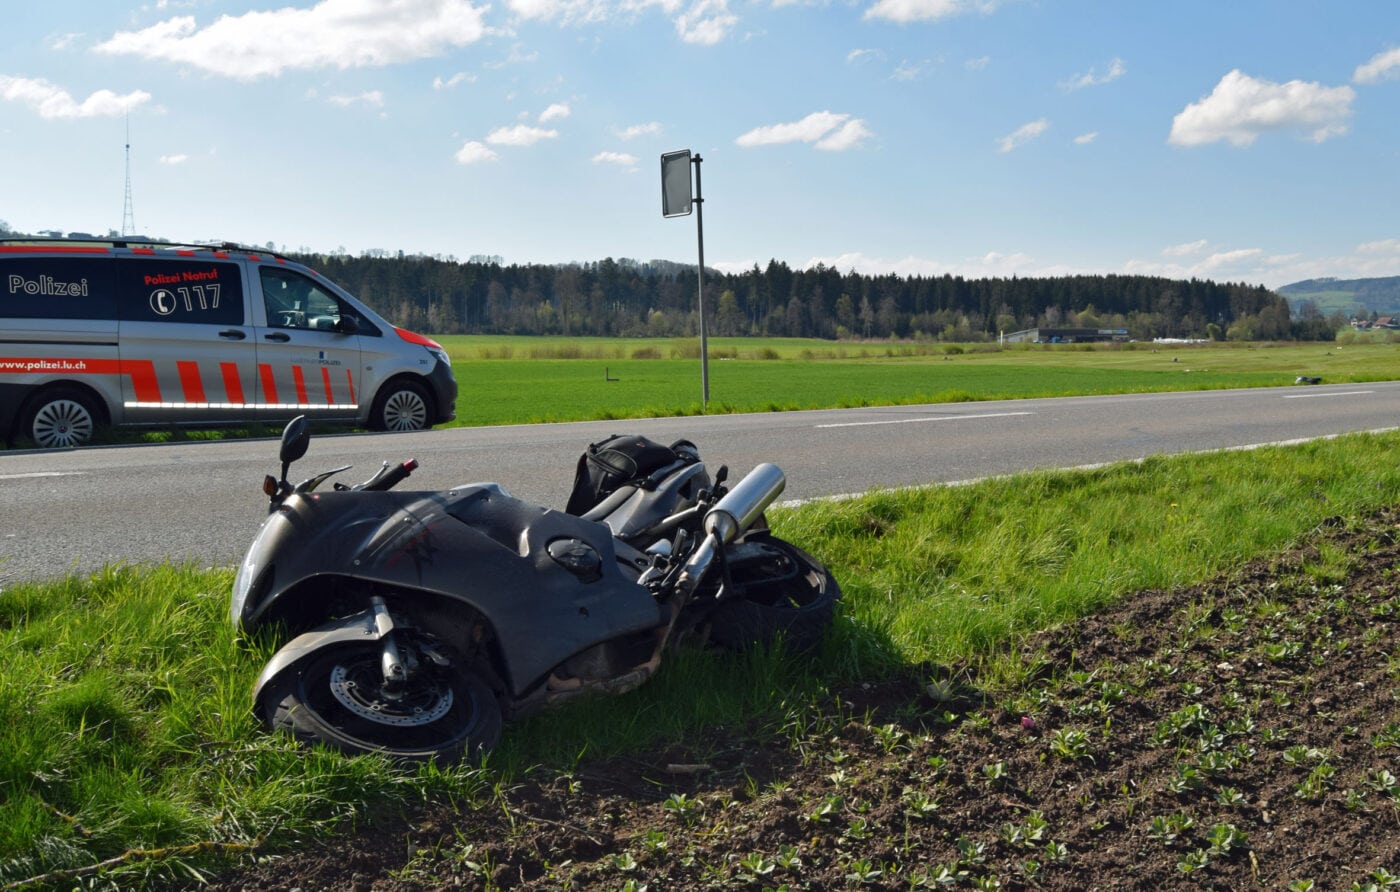 Kollision zwischen Motorrad und Reh – Töfffahrer verletzt – Reh tot